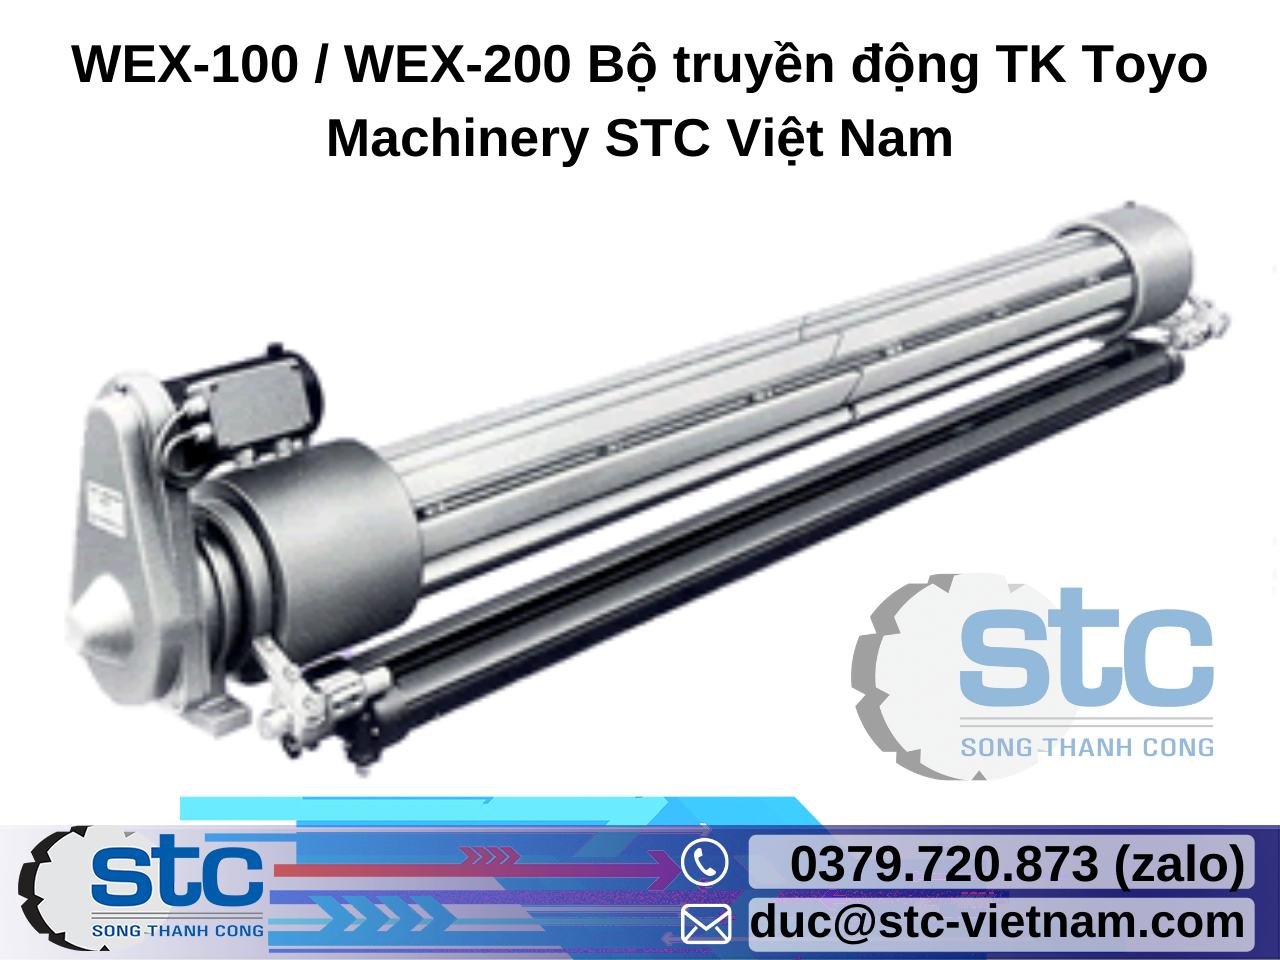 wex-100-wex-200-bo-truyen-dong-tk-toyo-machinery.png